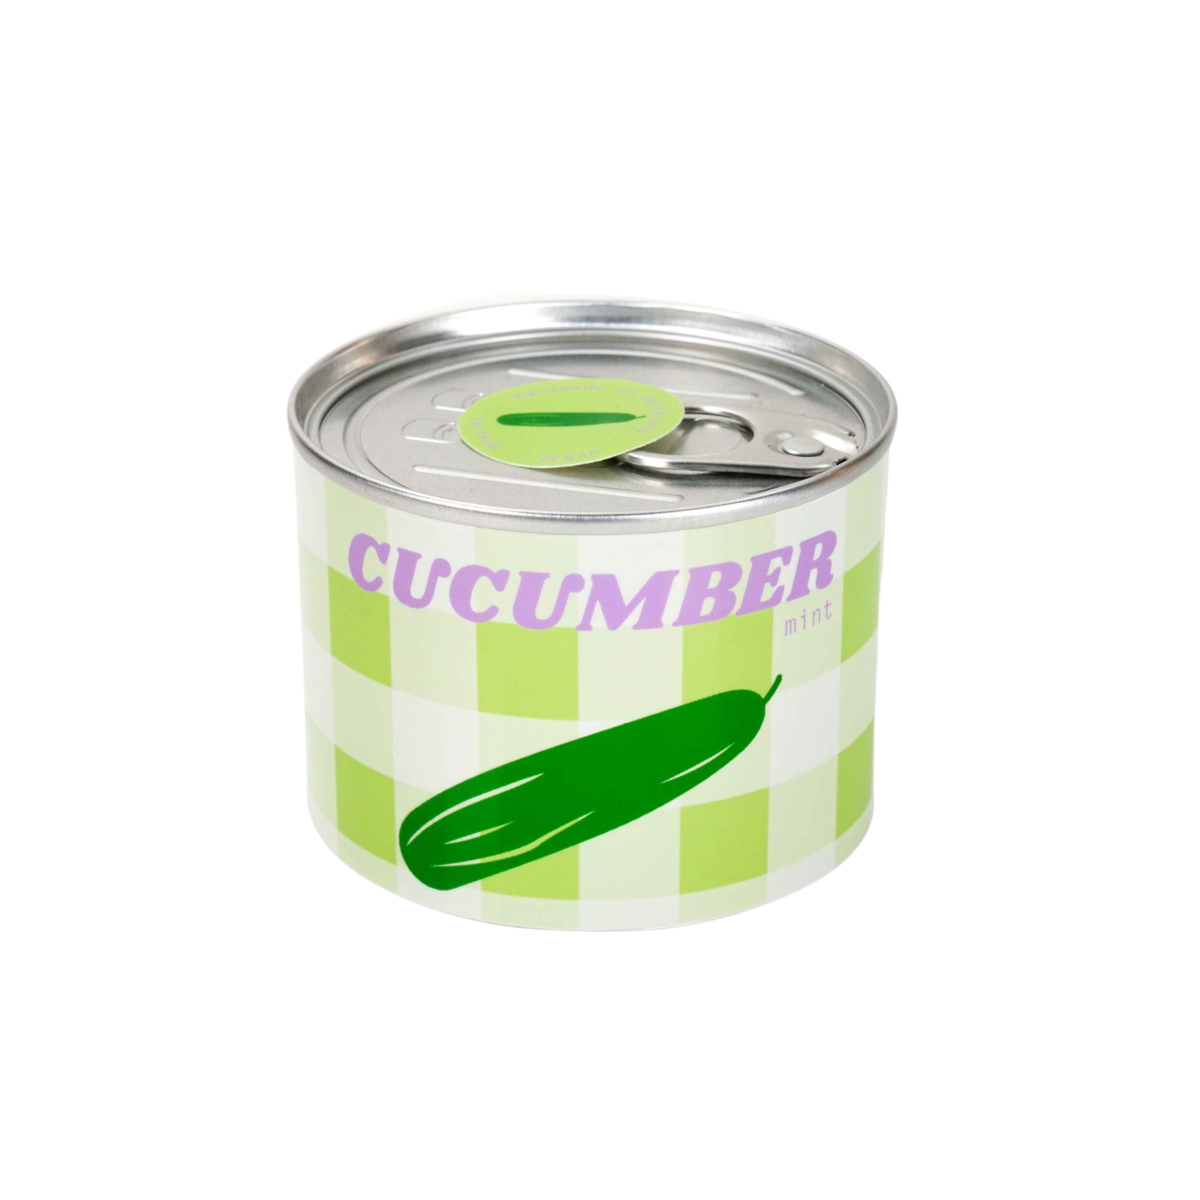 Cucumber & Mint